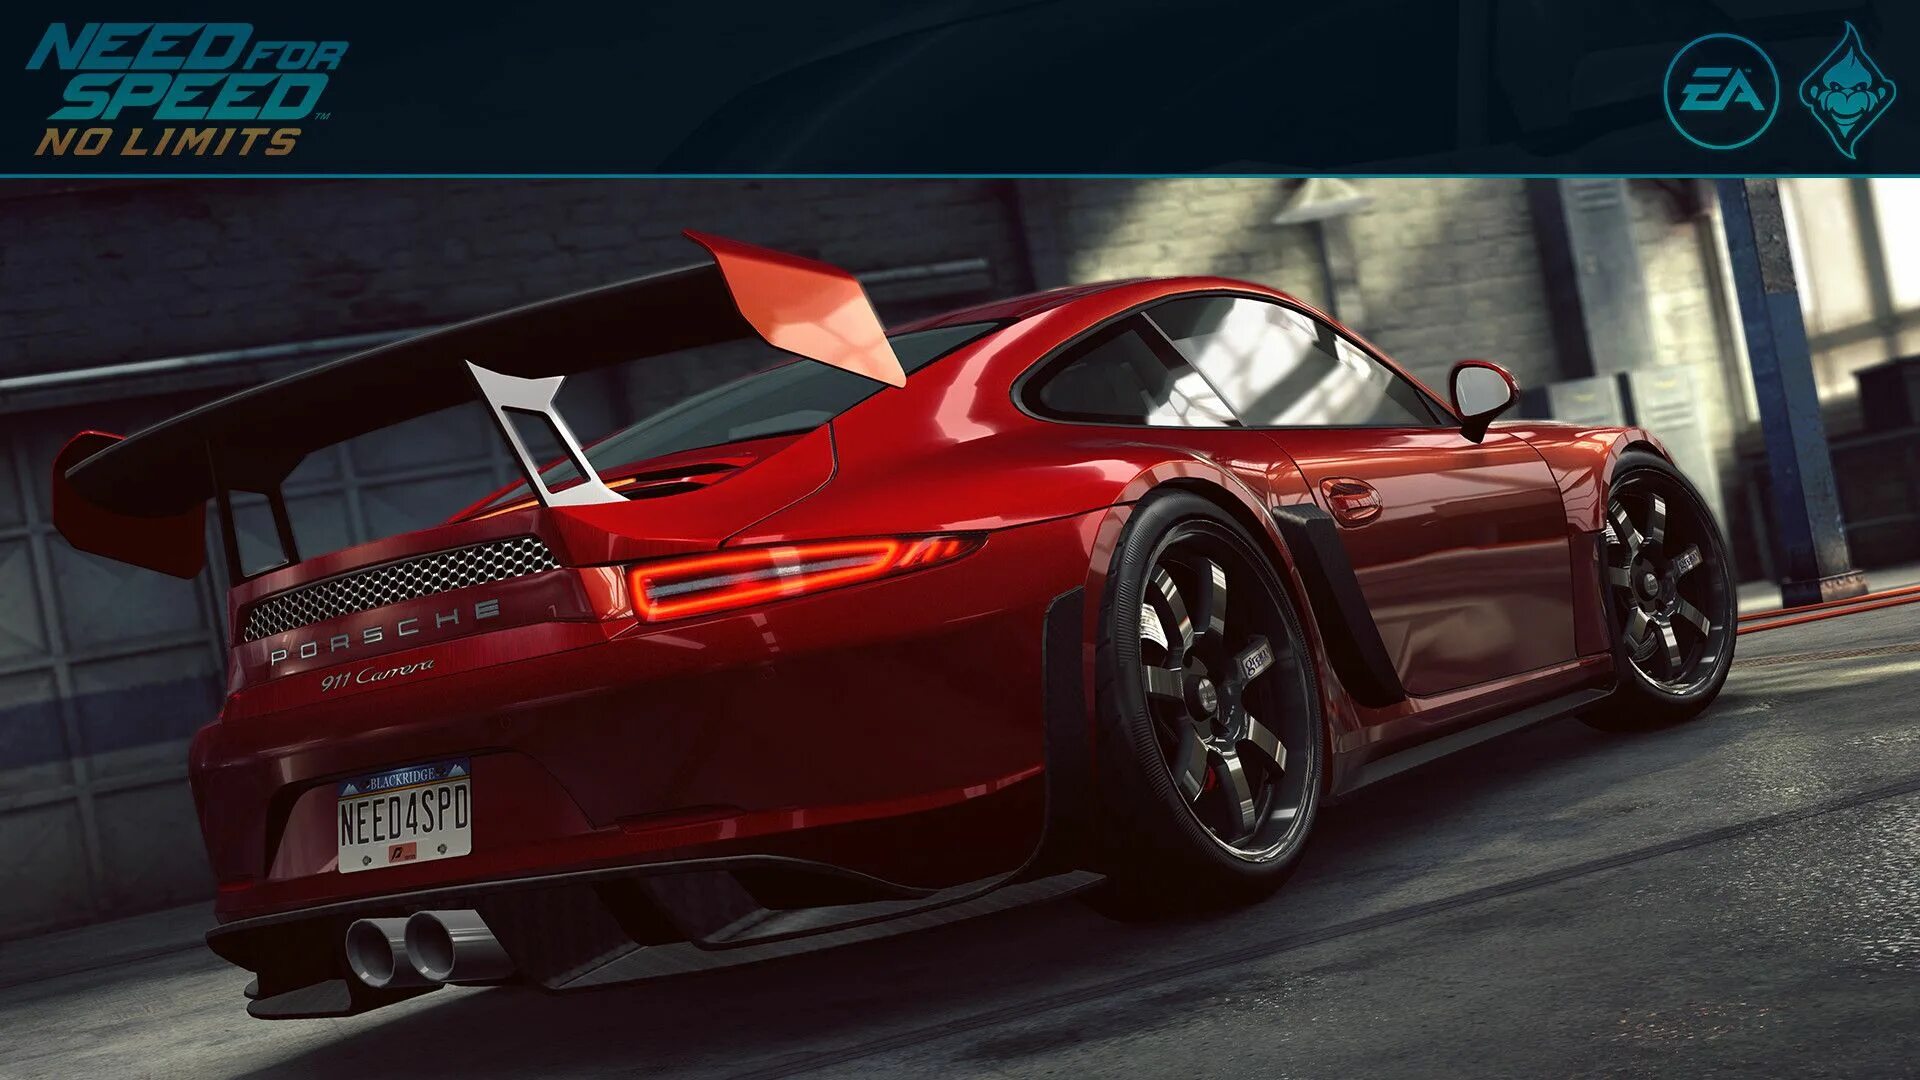 No limits на пк. Porshe 911 Carrera NFS. Need for Speed Porsche 911 Carrera s. Porsche 911 need for Speed. Need for Speed no limits.